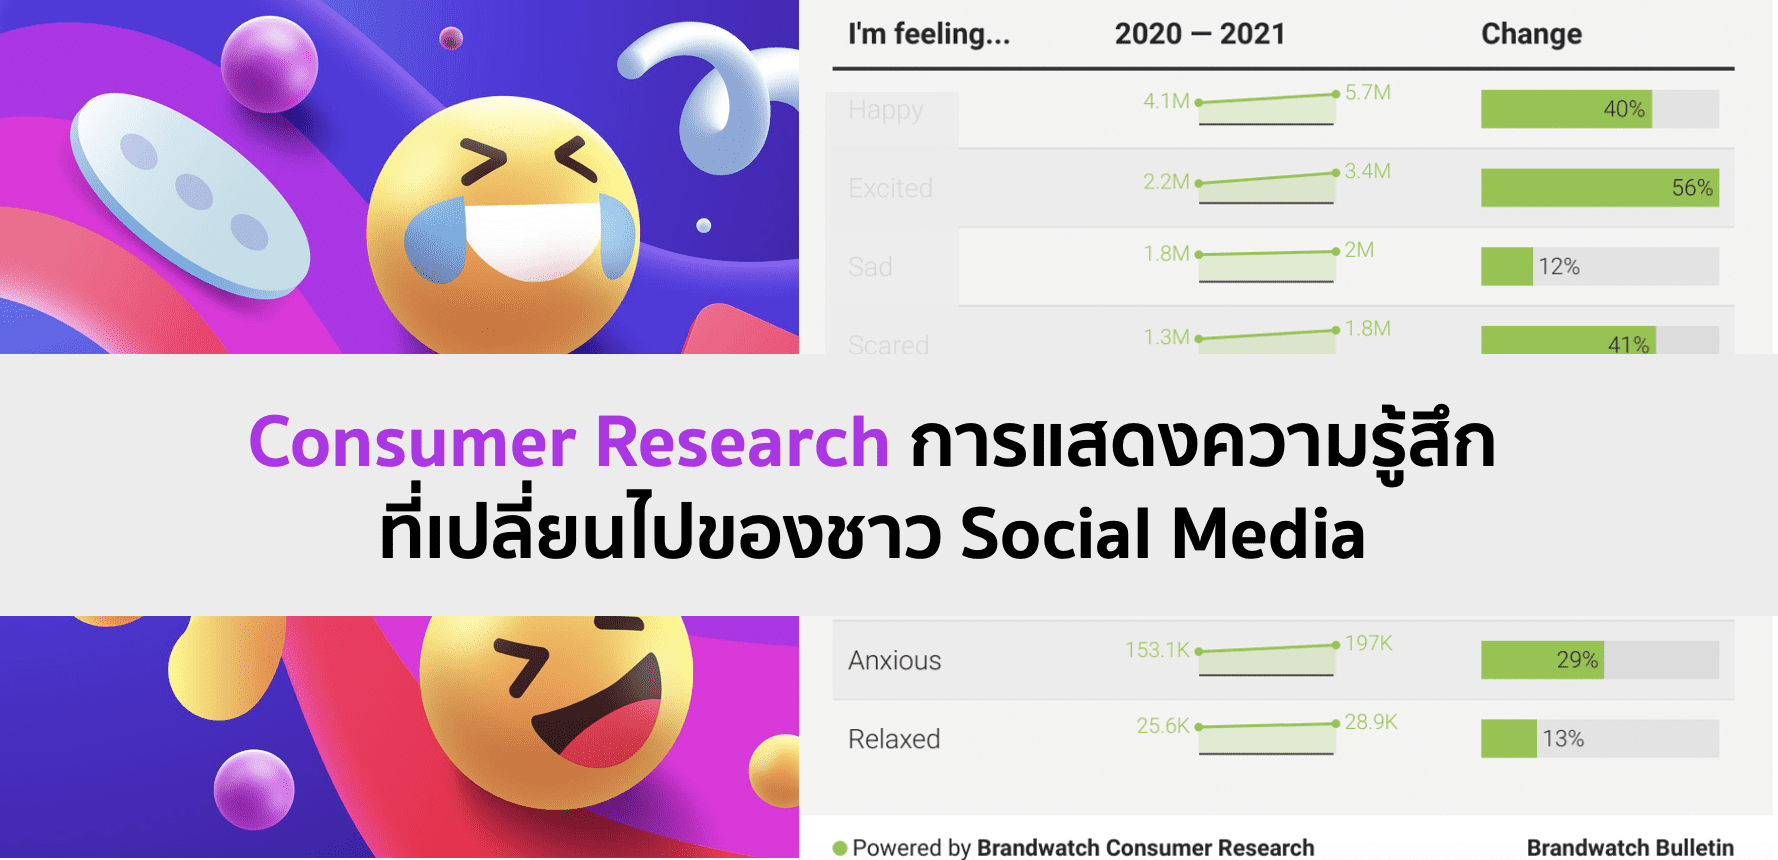 สรุป Consumer Research การแสดงความรู้สึกที่เปลี่ยนไปของชาว Social Media